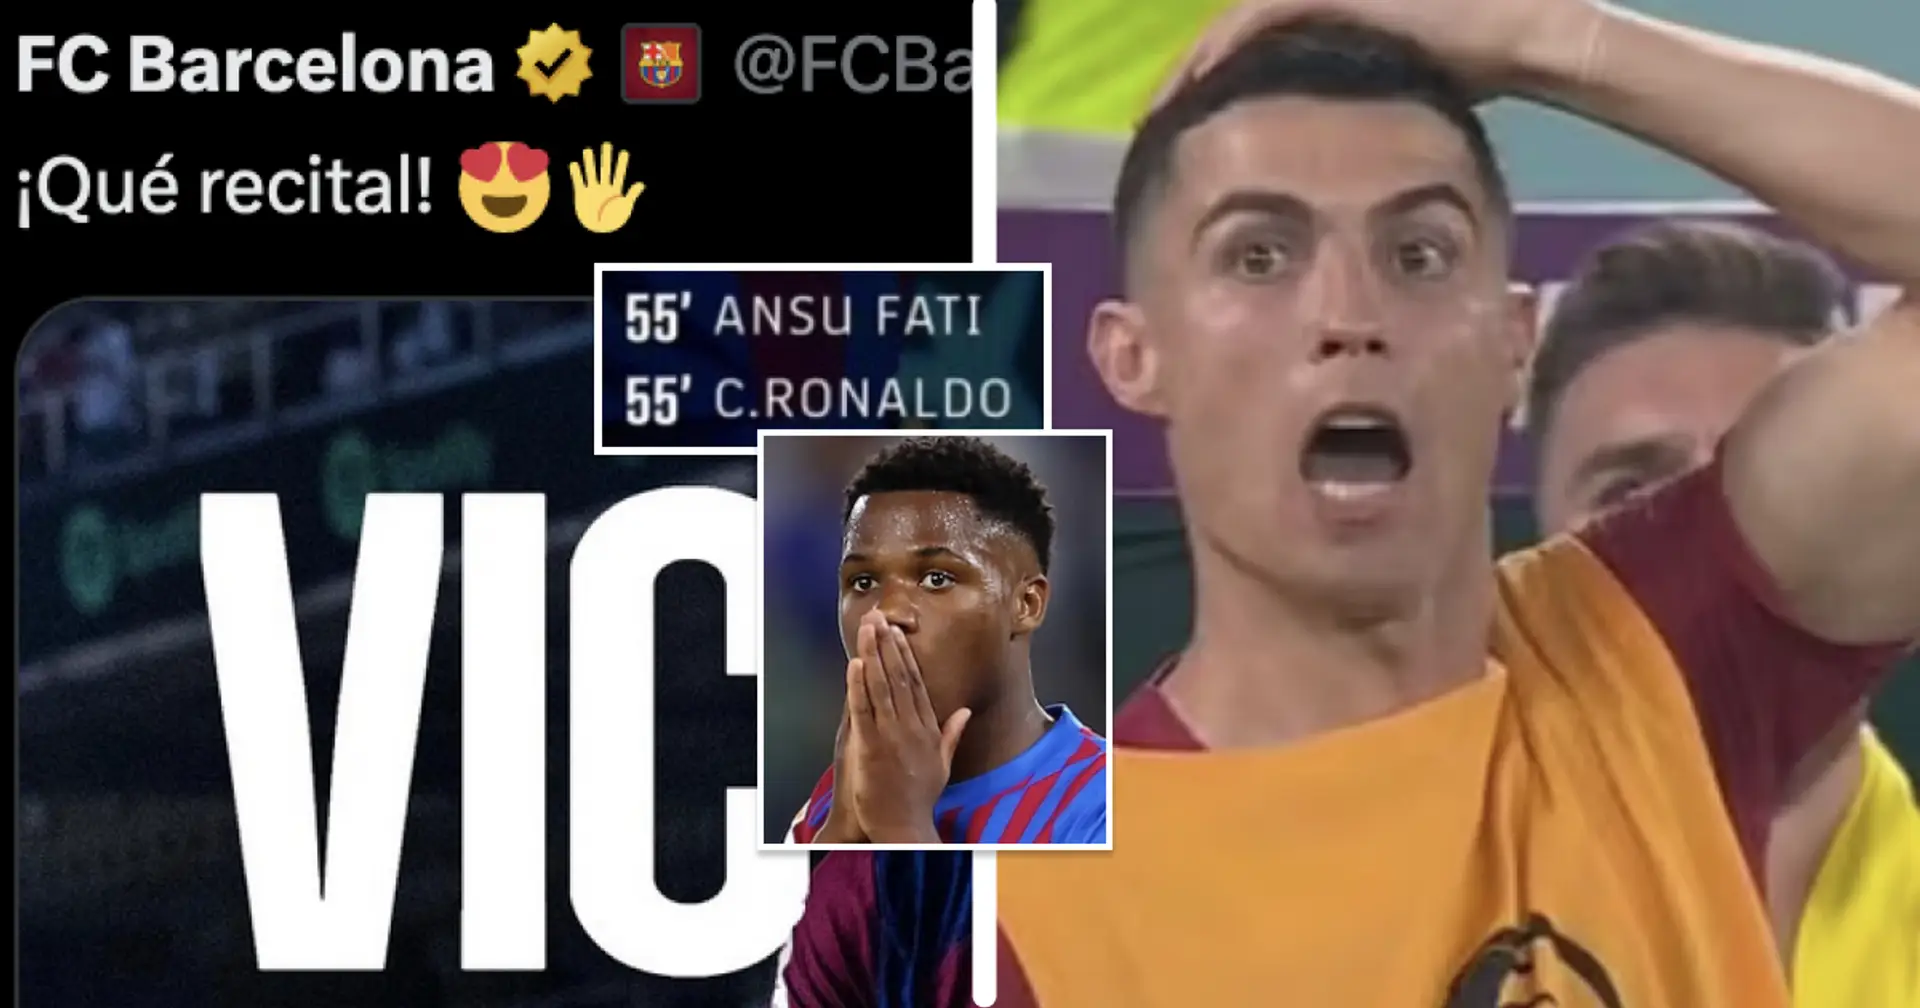 La cuenta oficial del Barcelona menciona a Cristiano Ronaldo y Ansu Fati tras la victoria vs Real Betis